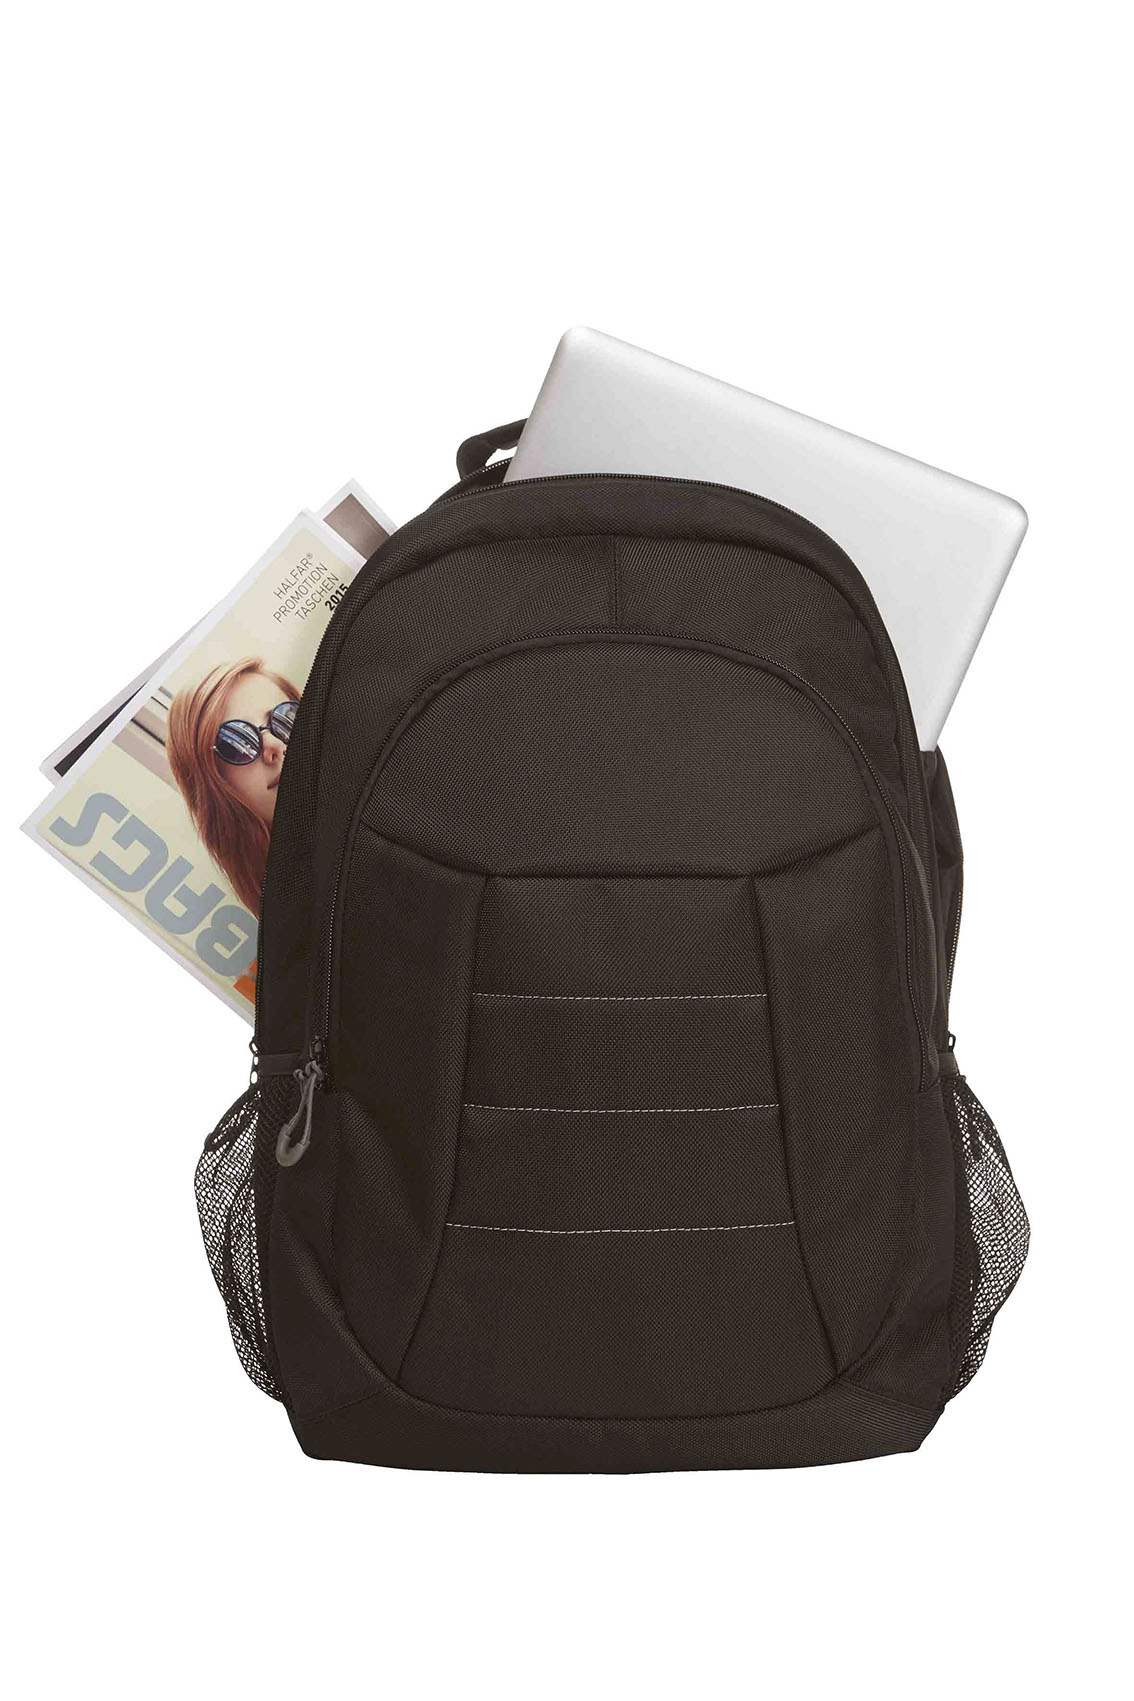 filled notebook backpack IMPULSE